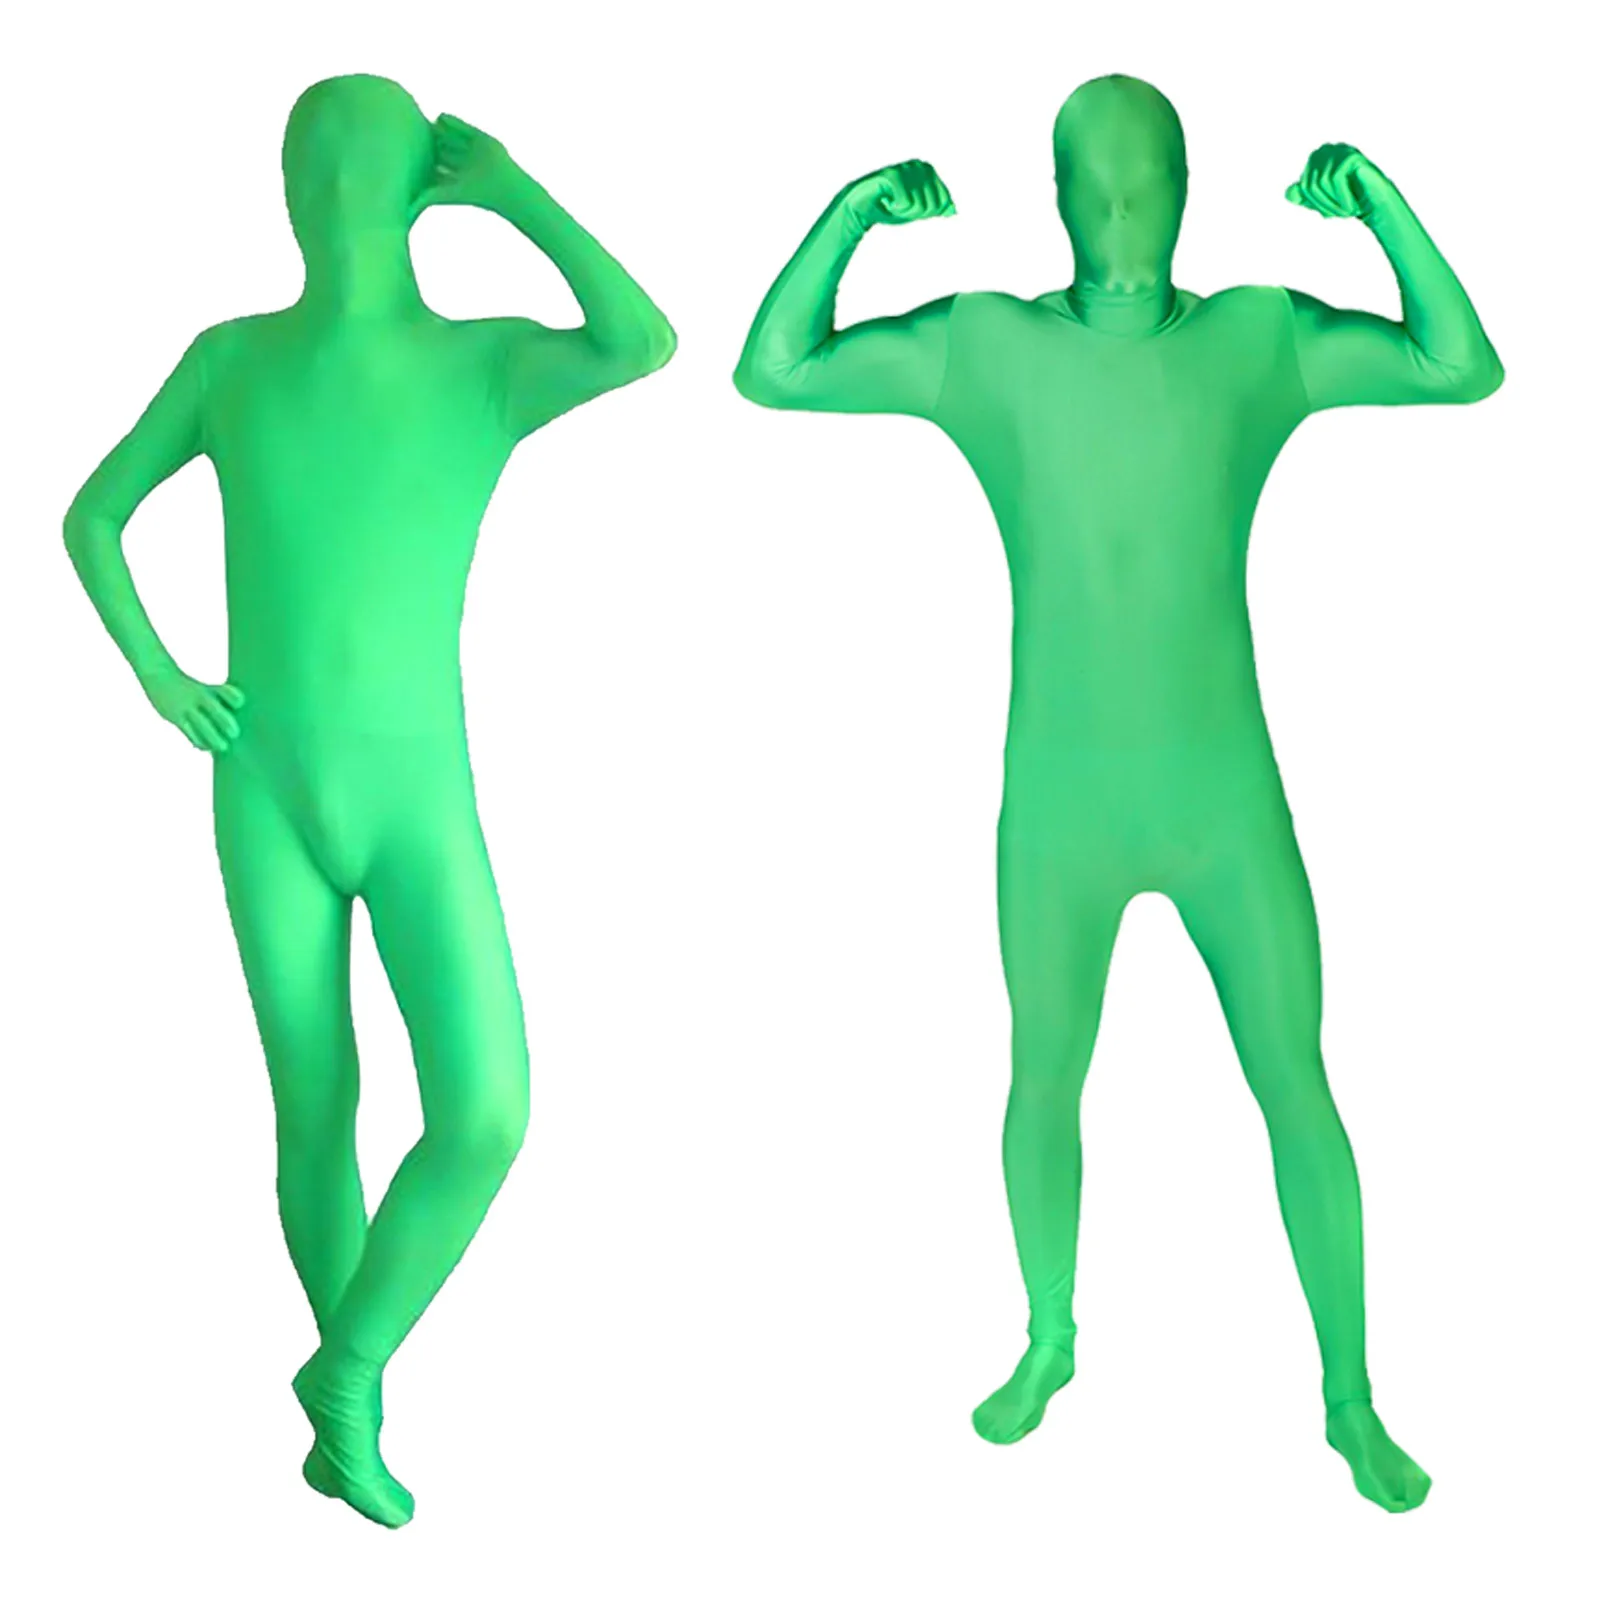 

Полноразмерная фотография, хромакей, зеленый костюм 160/170/180 см, унисекс, зеленое боди для взрослых, фотография, фотофестиваль, косплей